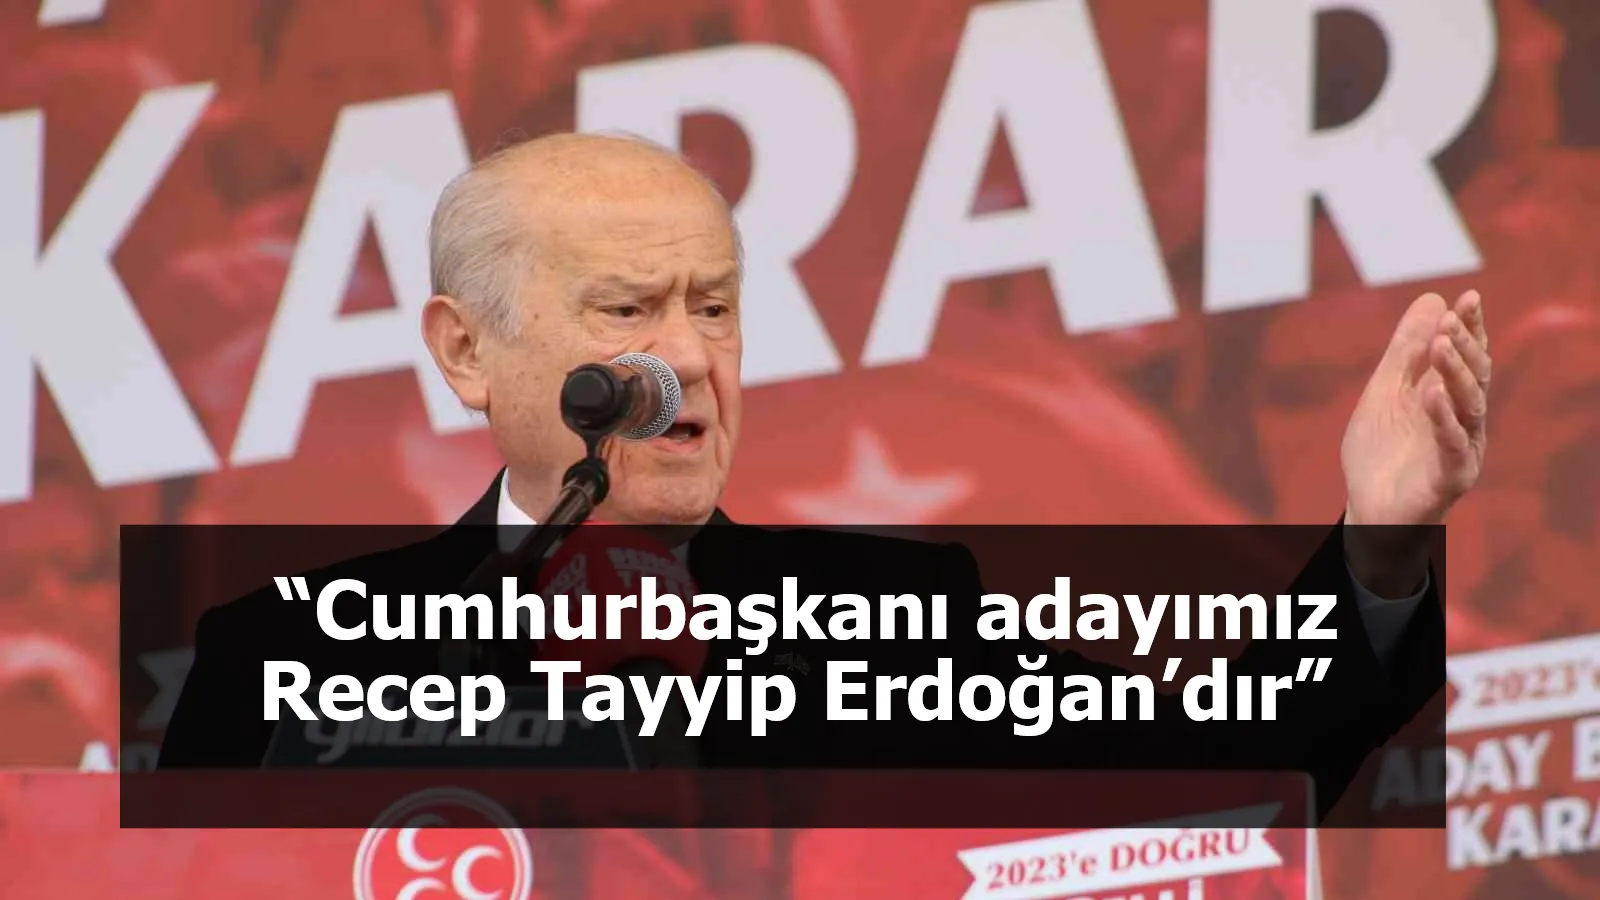 MHP Genel Başkanı Bahçeli: “Cumhurbaşkanı adayımız Recep Tayyip Erdoğan’dır”